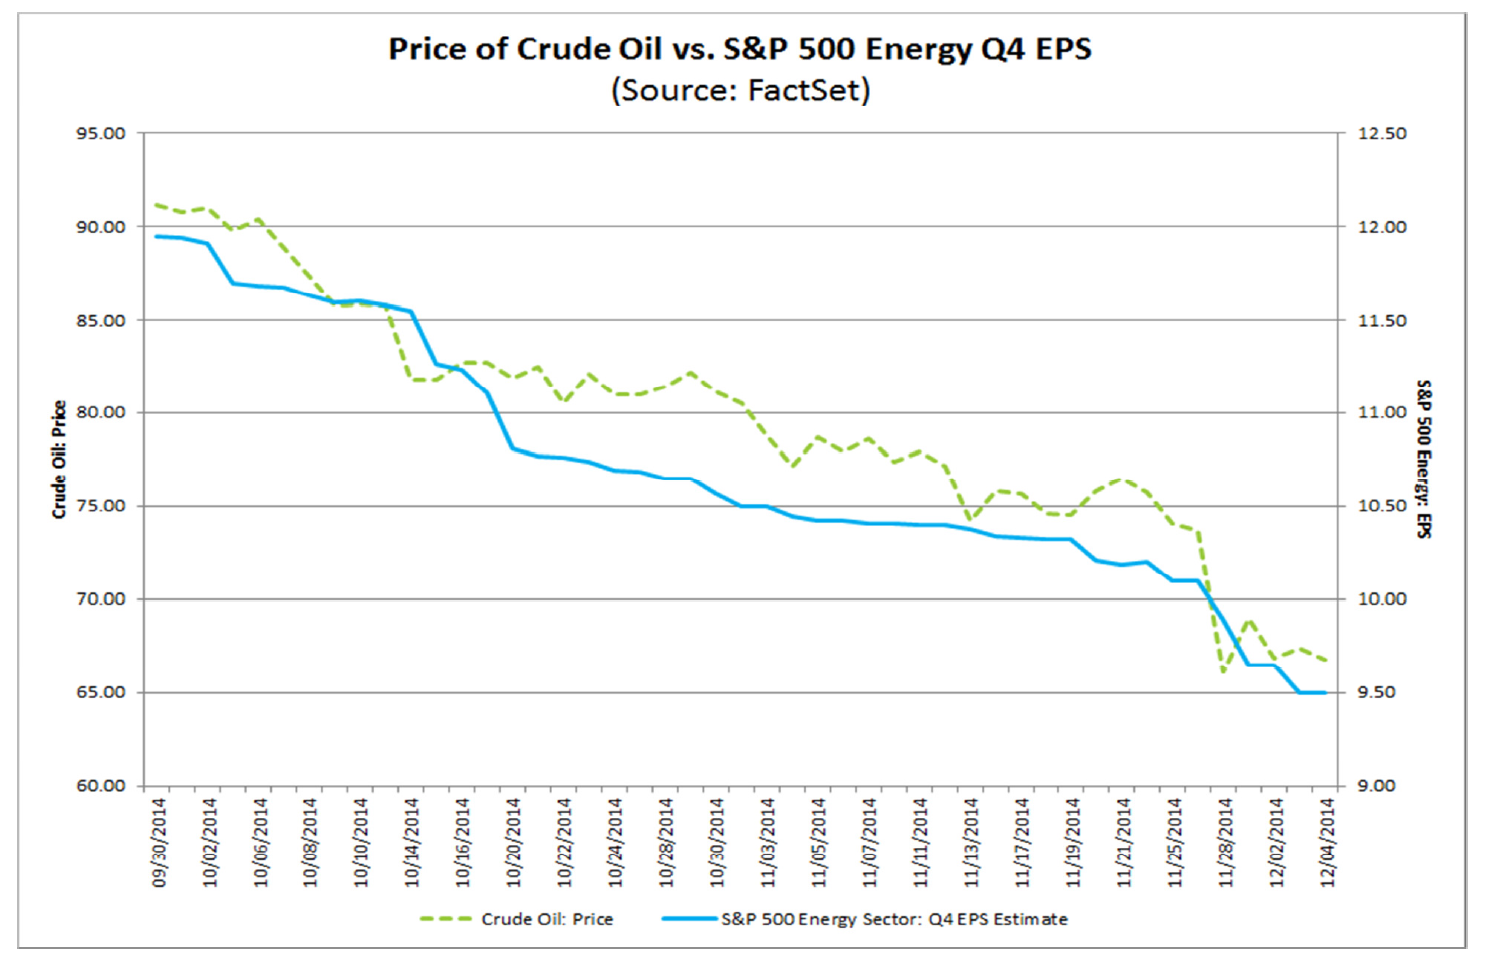 Oil Price vs S&P 500 Energy Q4 EPS